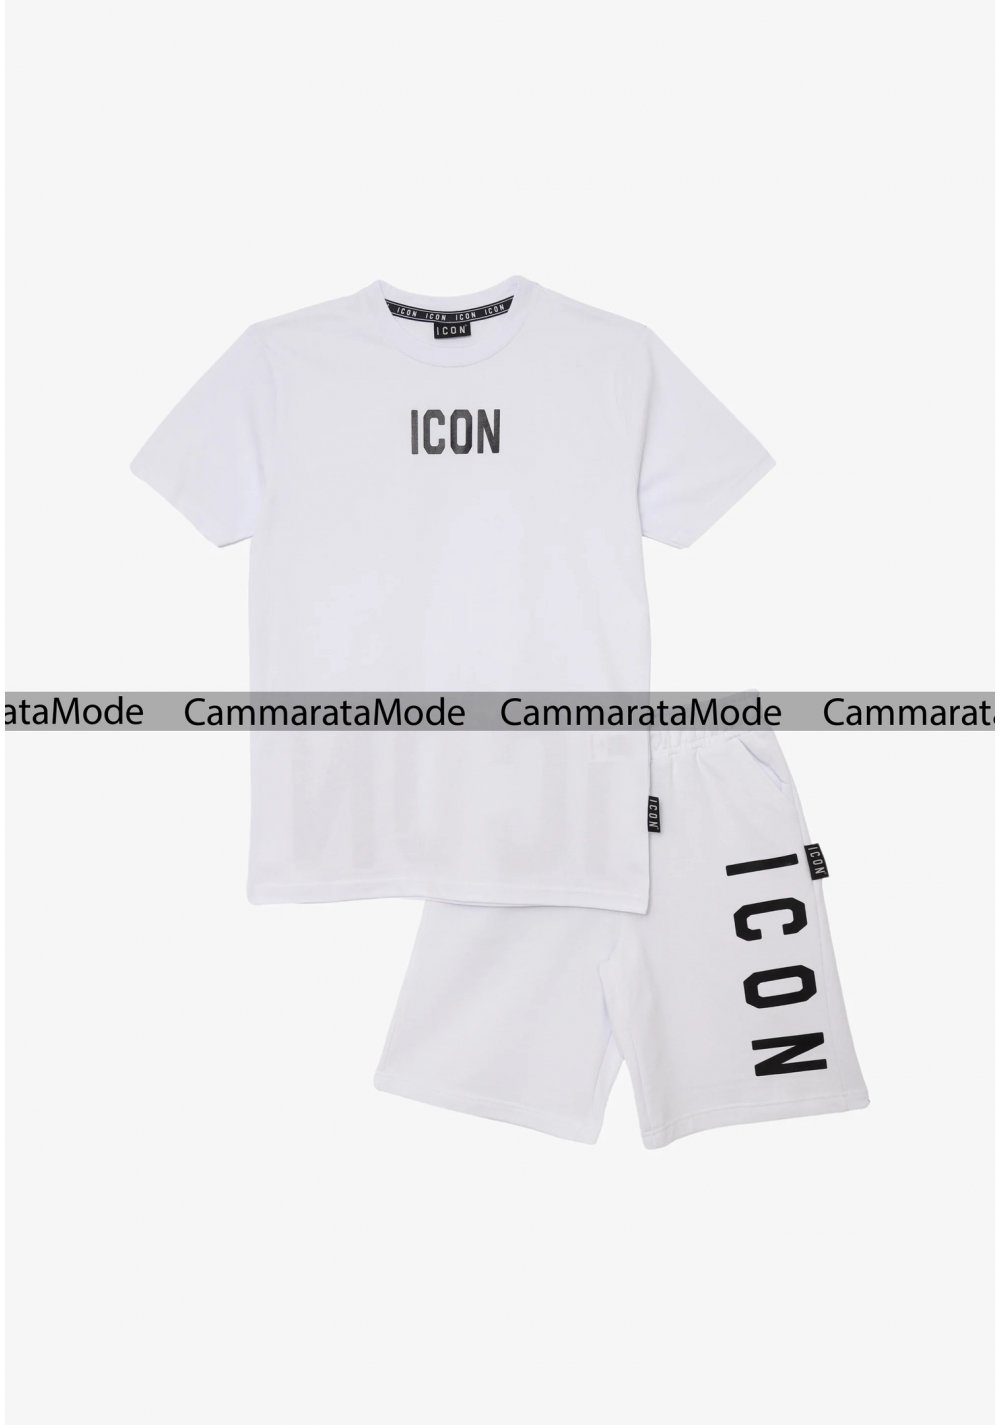 Completo ICON bambini - Set bianco t-shirt e bermuda con logo in gomma